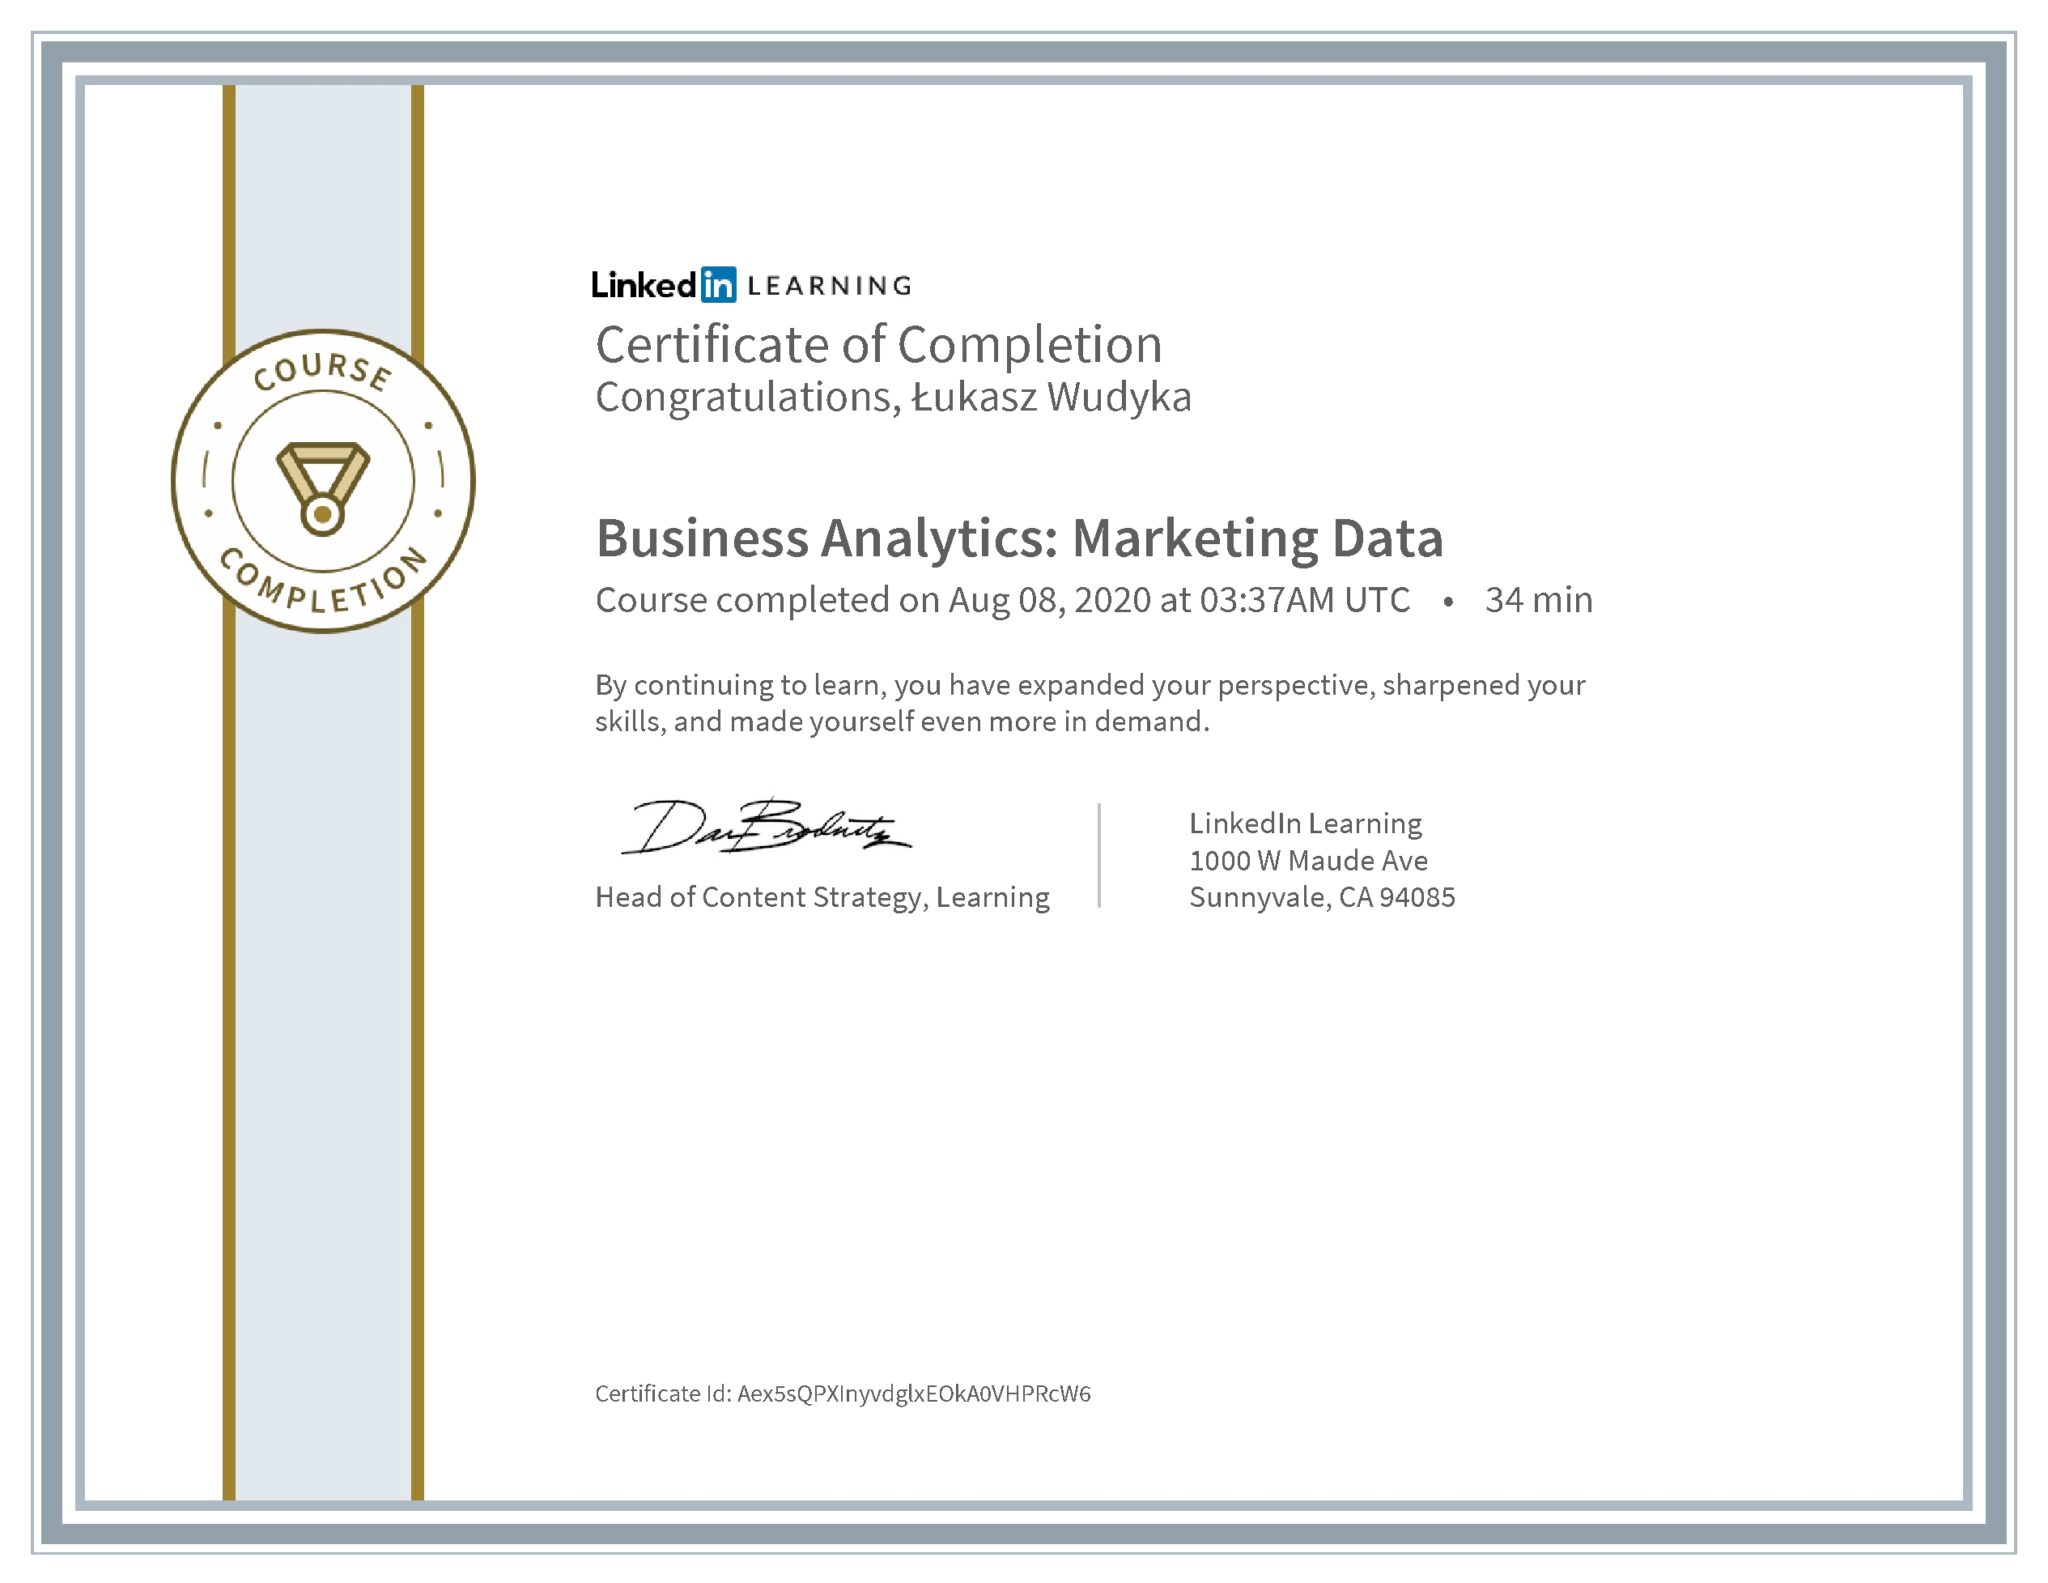 Łukasz Wudyka certyfikat LinkedIn Business Analytics: Marketing Data